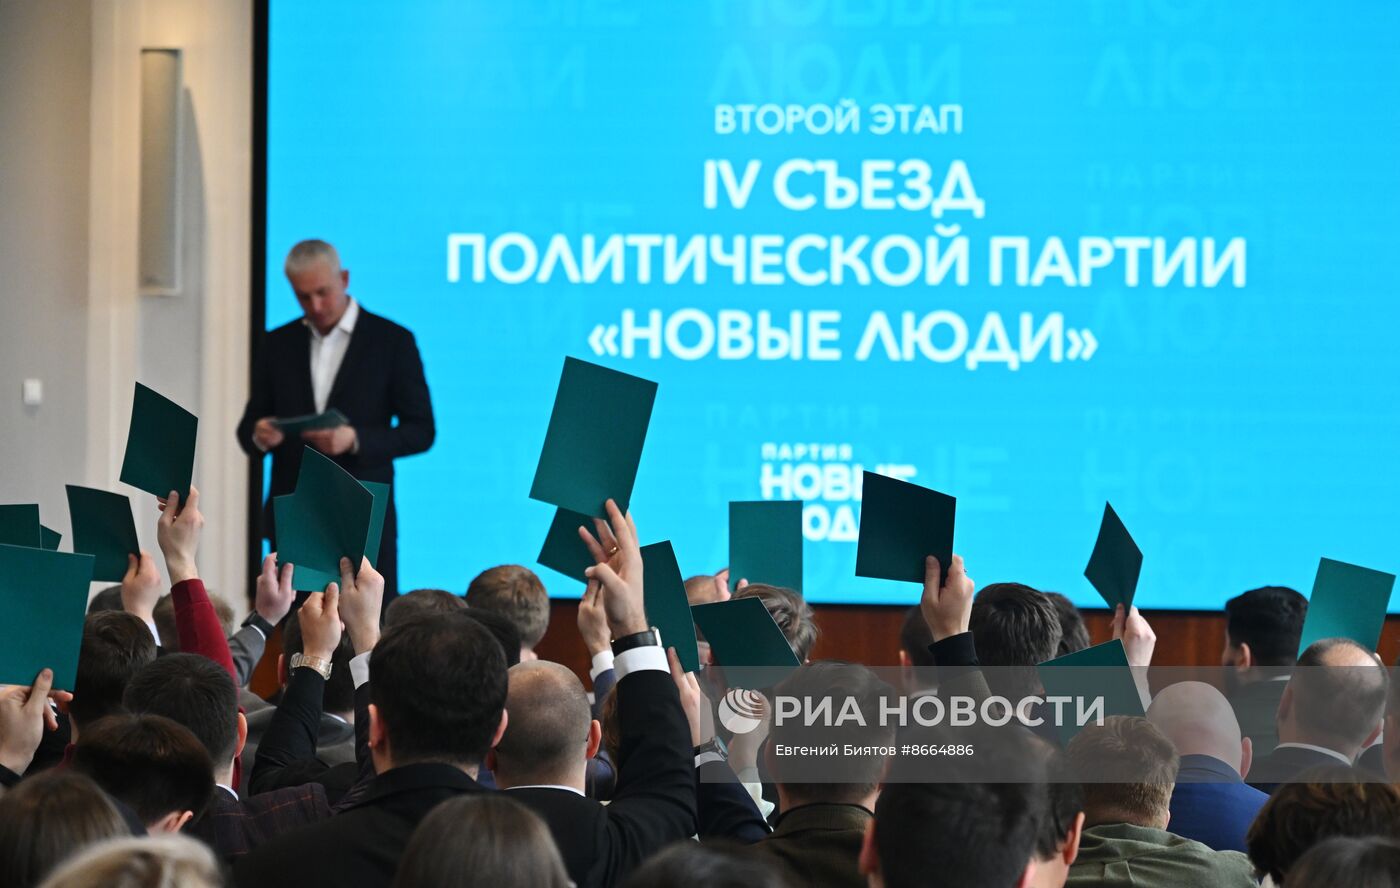 Объединительный съезд партии "Новые люди" и партии Роста